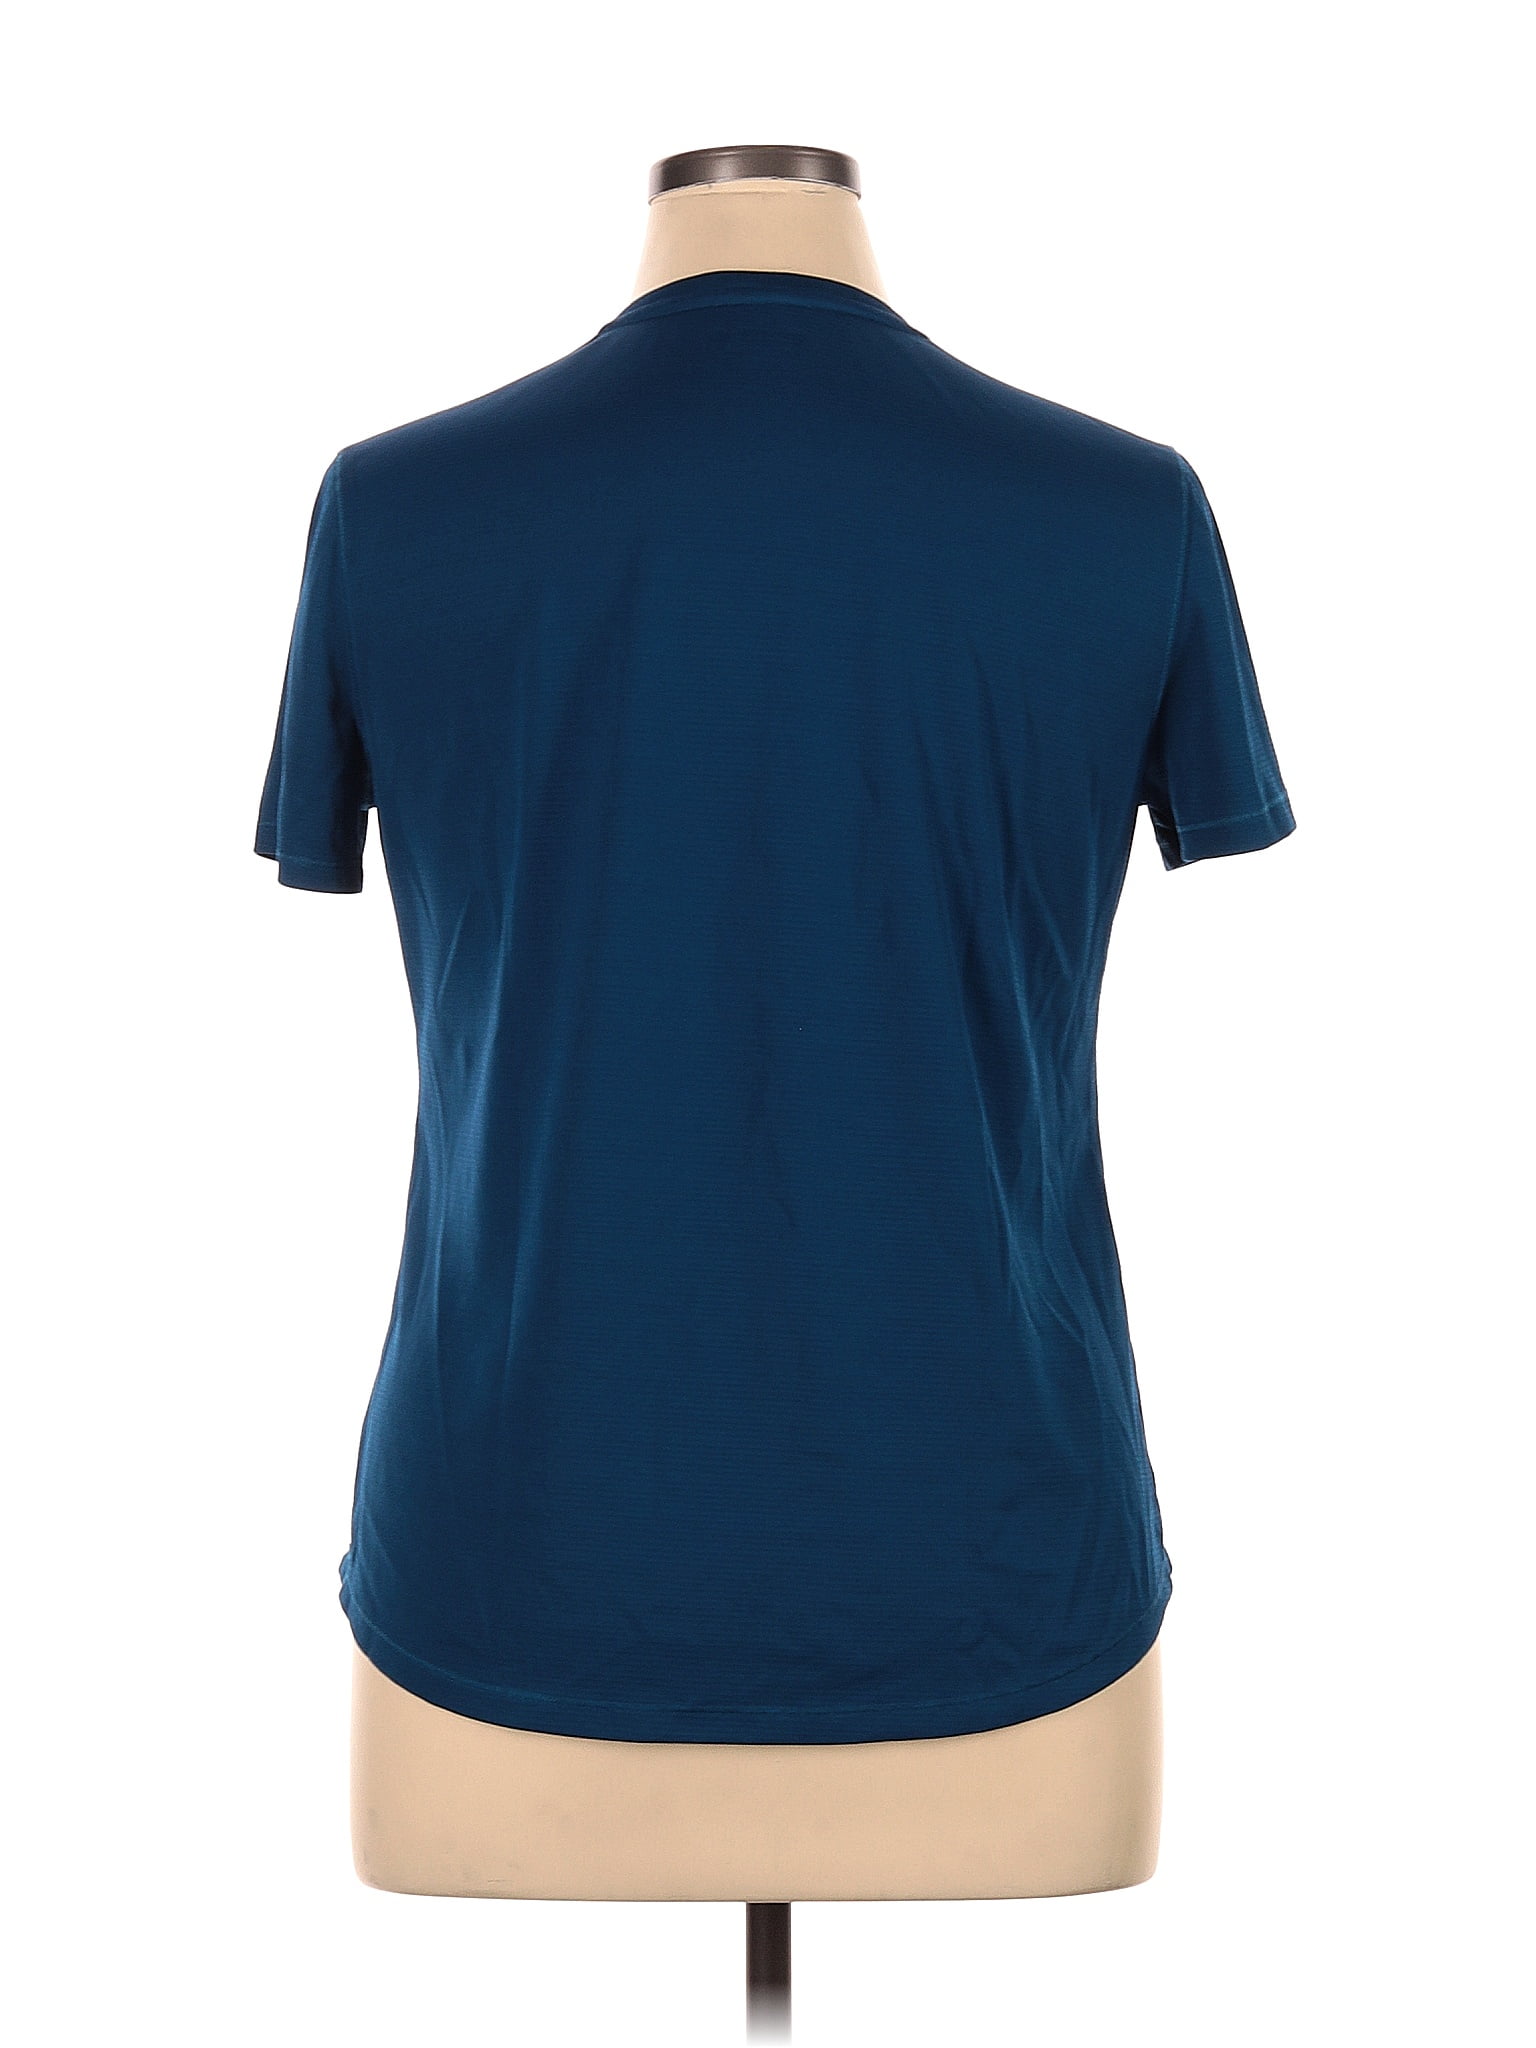 Reel Legends 100% Polyester Teal Blue Short Sleeve T-Shirt Size L - 23% off